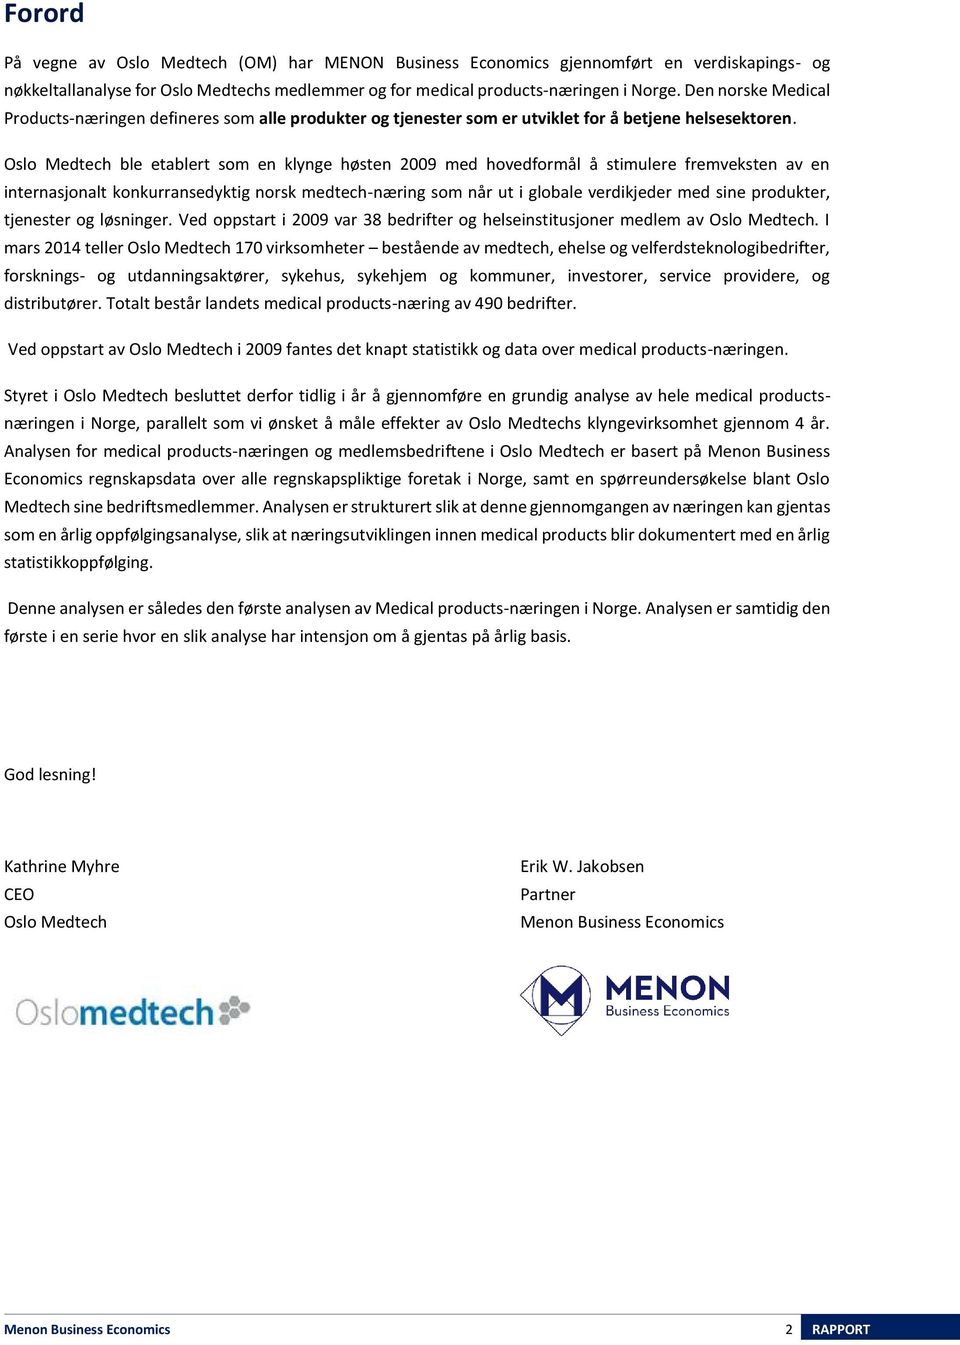 Oslo Medtech ble etablert som en klynge høsten 2009 med hovedformål å stimulere fremveksten av en internasjonalt konkurransedyktig norsk medtech-næring som når ut i globale verdikjeder med sine